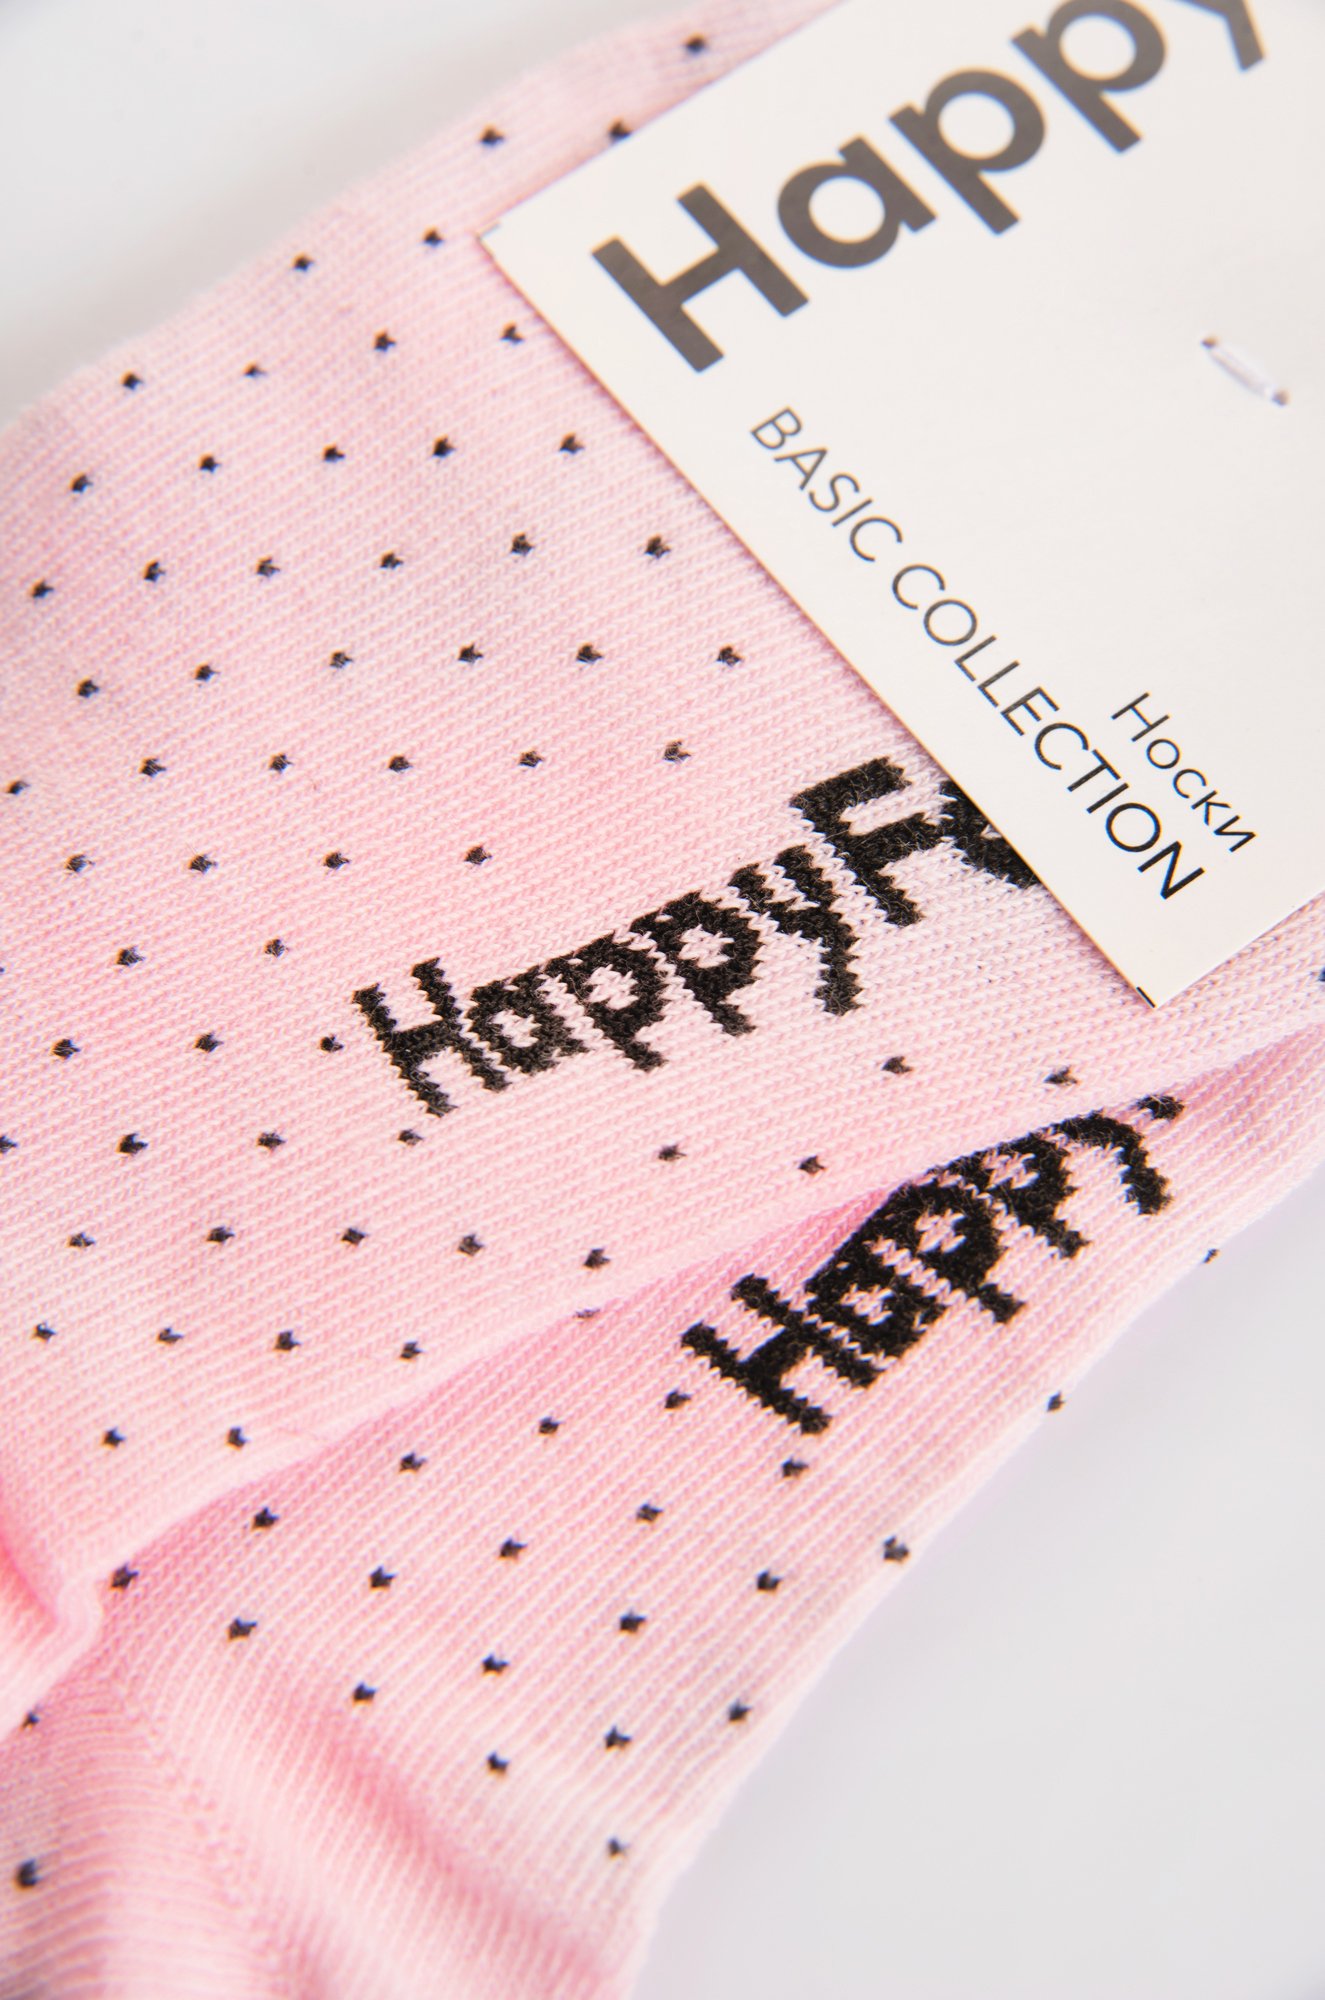 Набор женских носков 6 пар Happy Fox